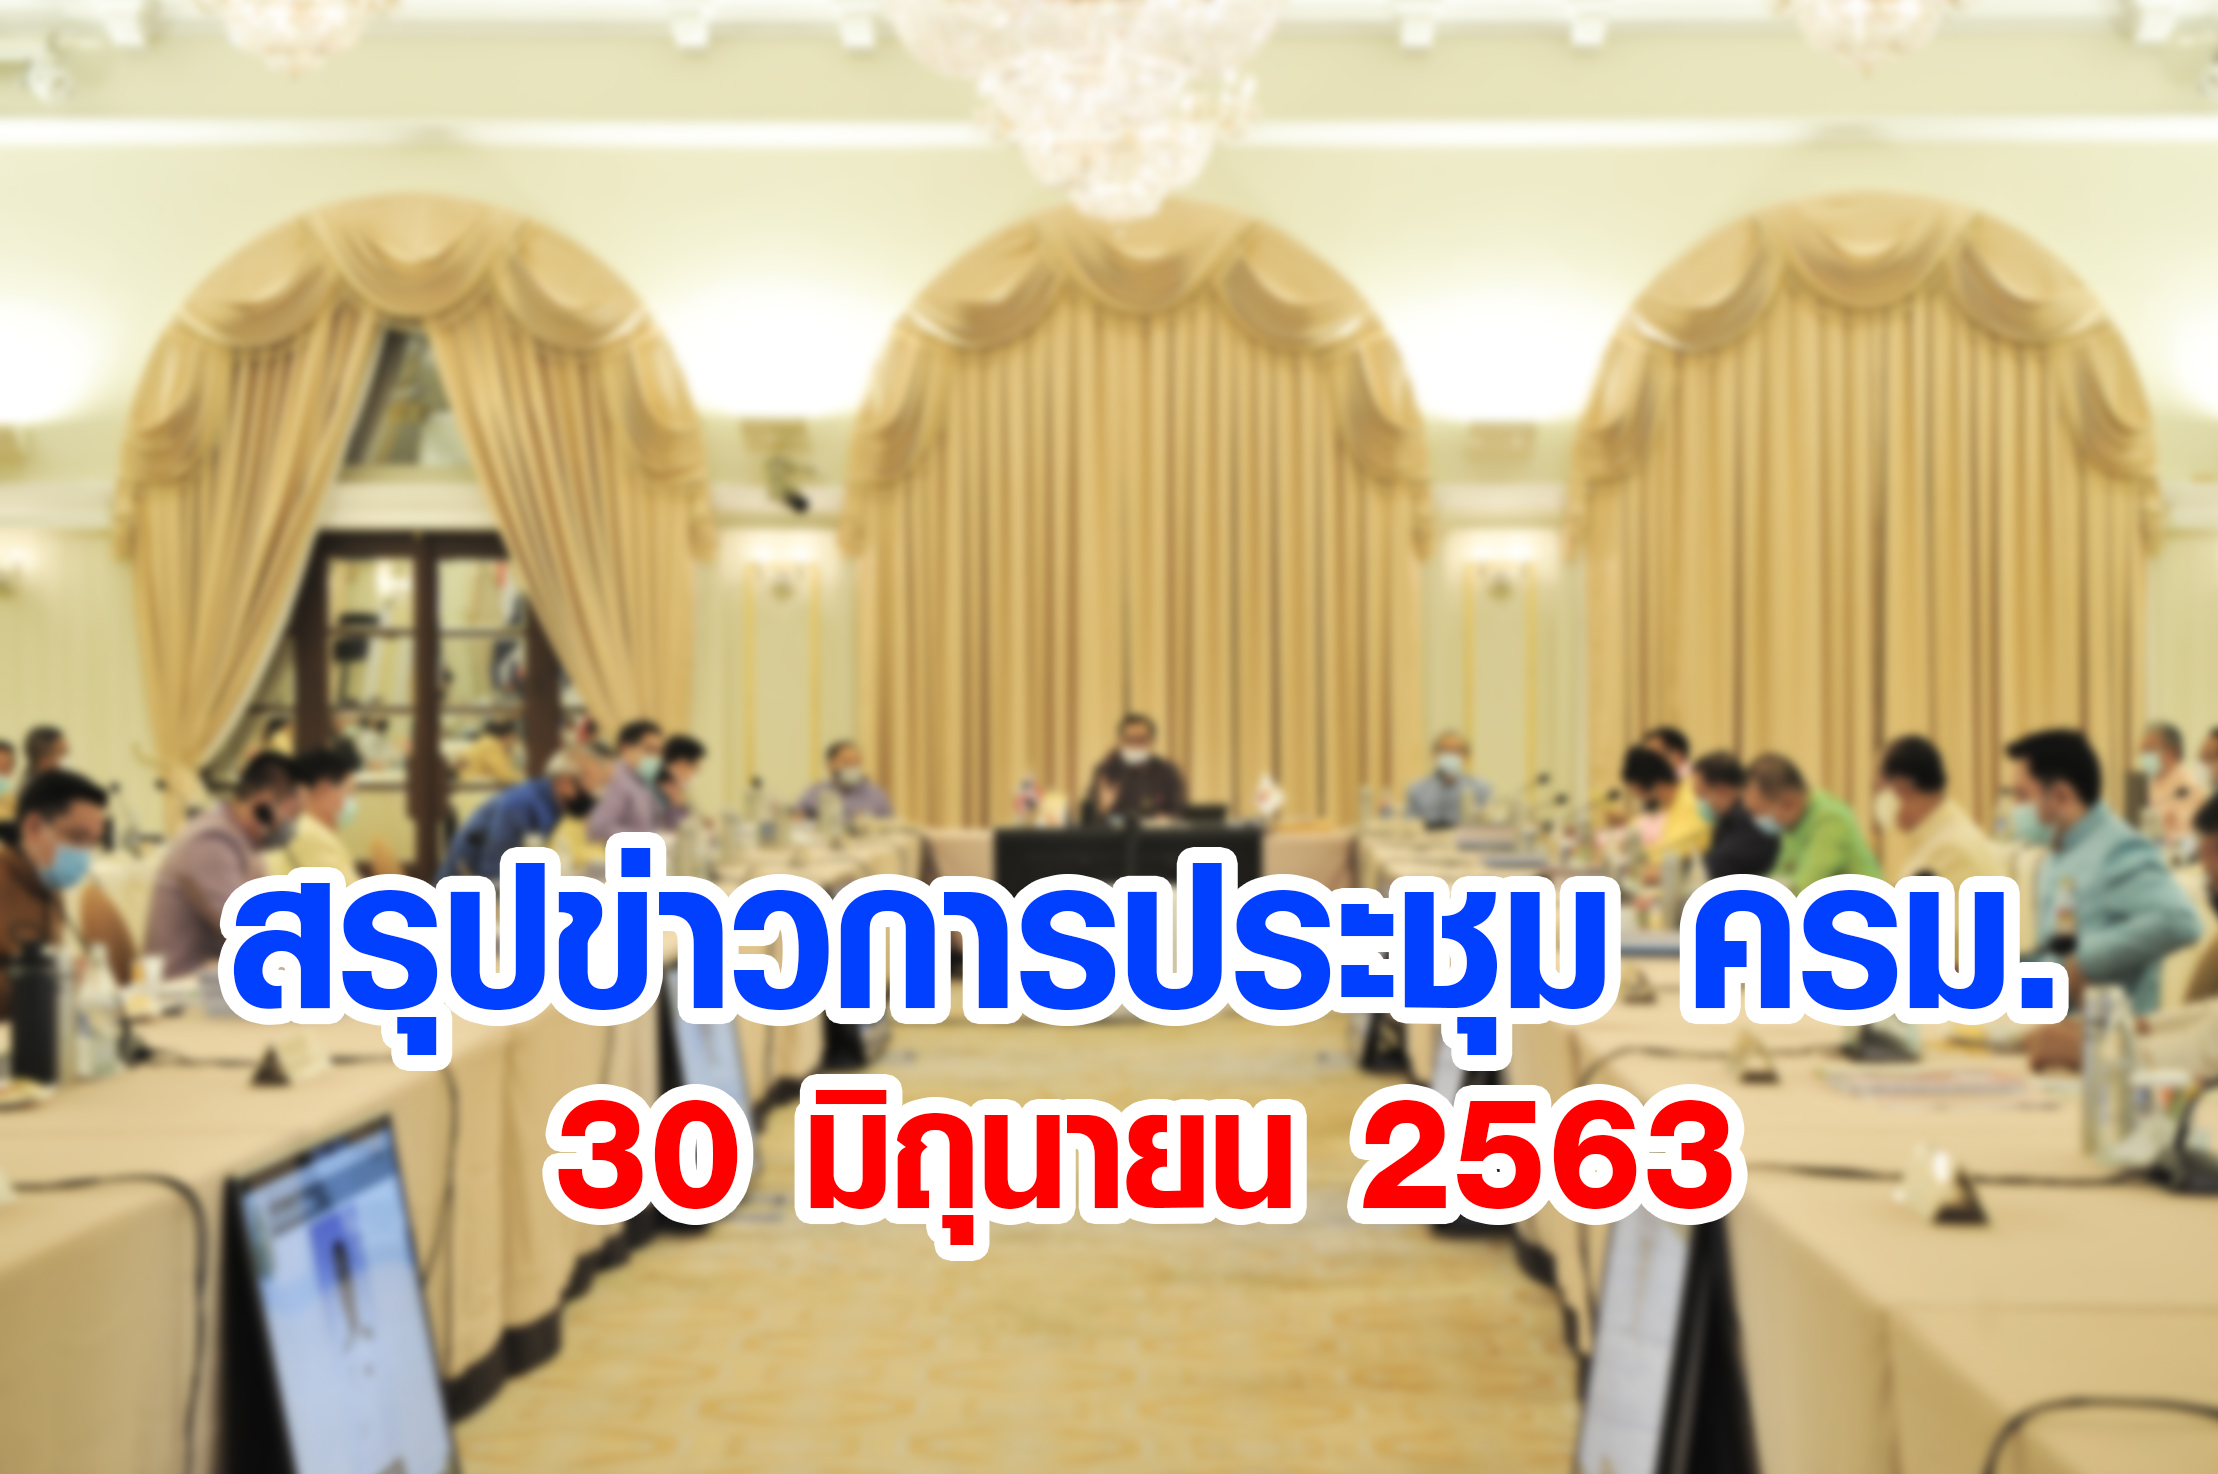 สรุปข่าวการประชุมคณะรัฐมนตรี 30 มิ.ย. 2563